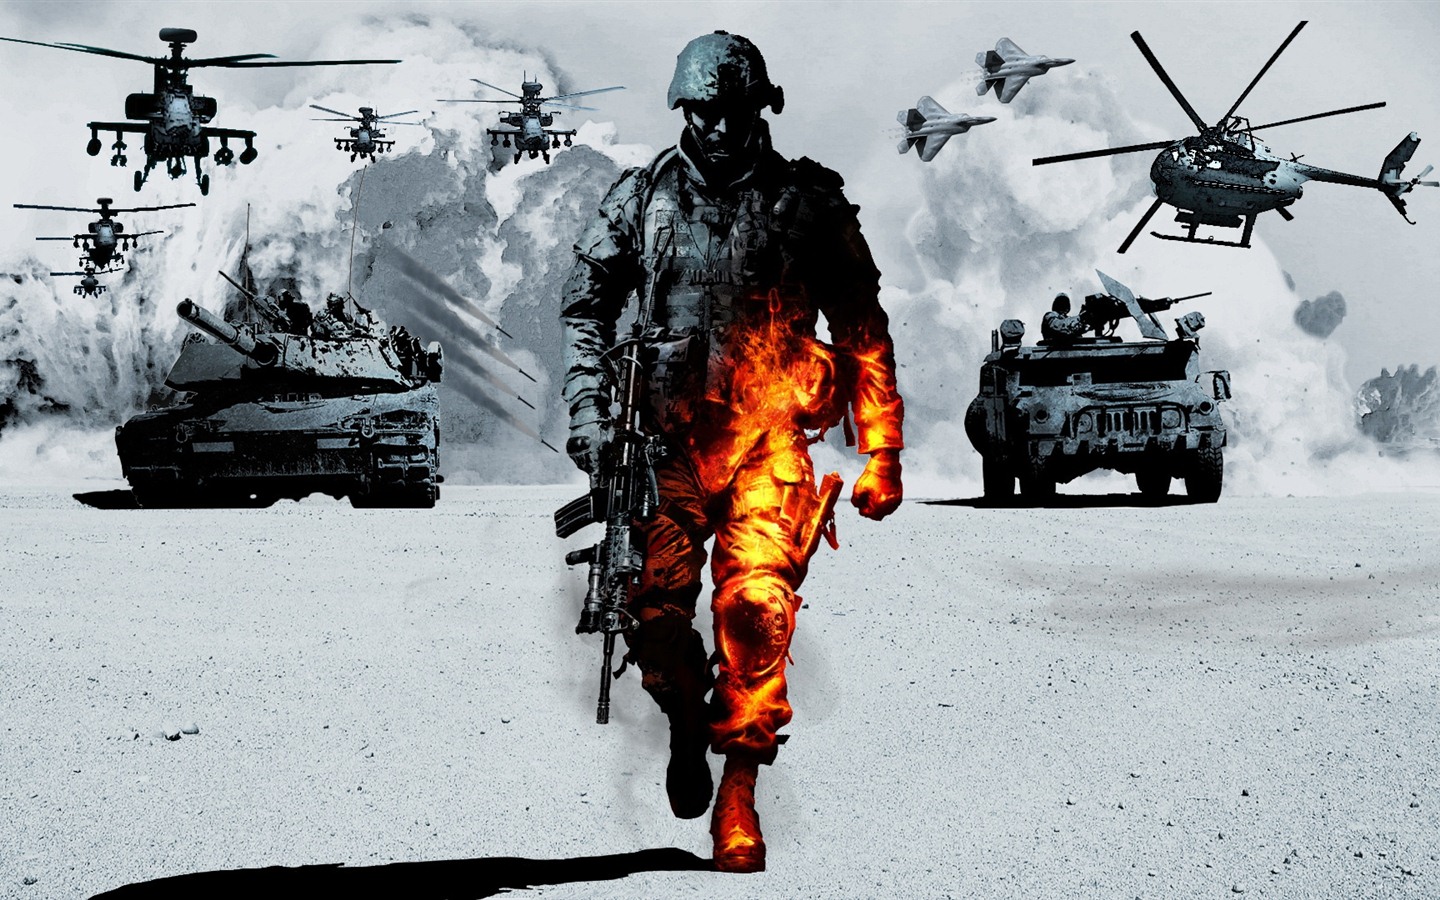 Battlefield 3 HD wallpapers #5 - 1440x900